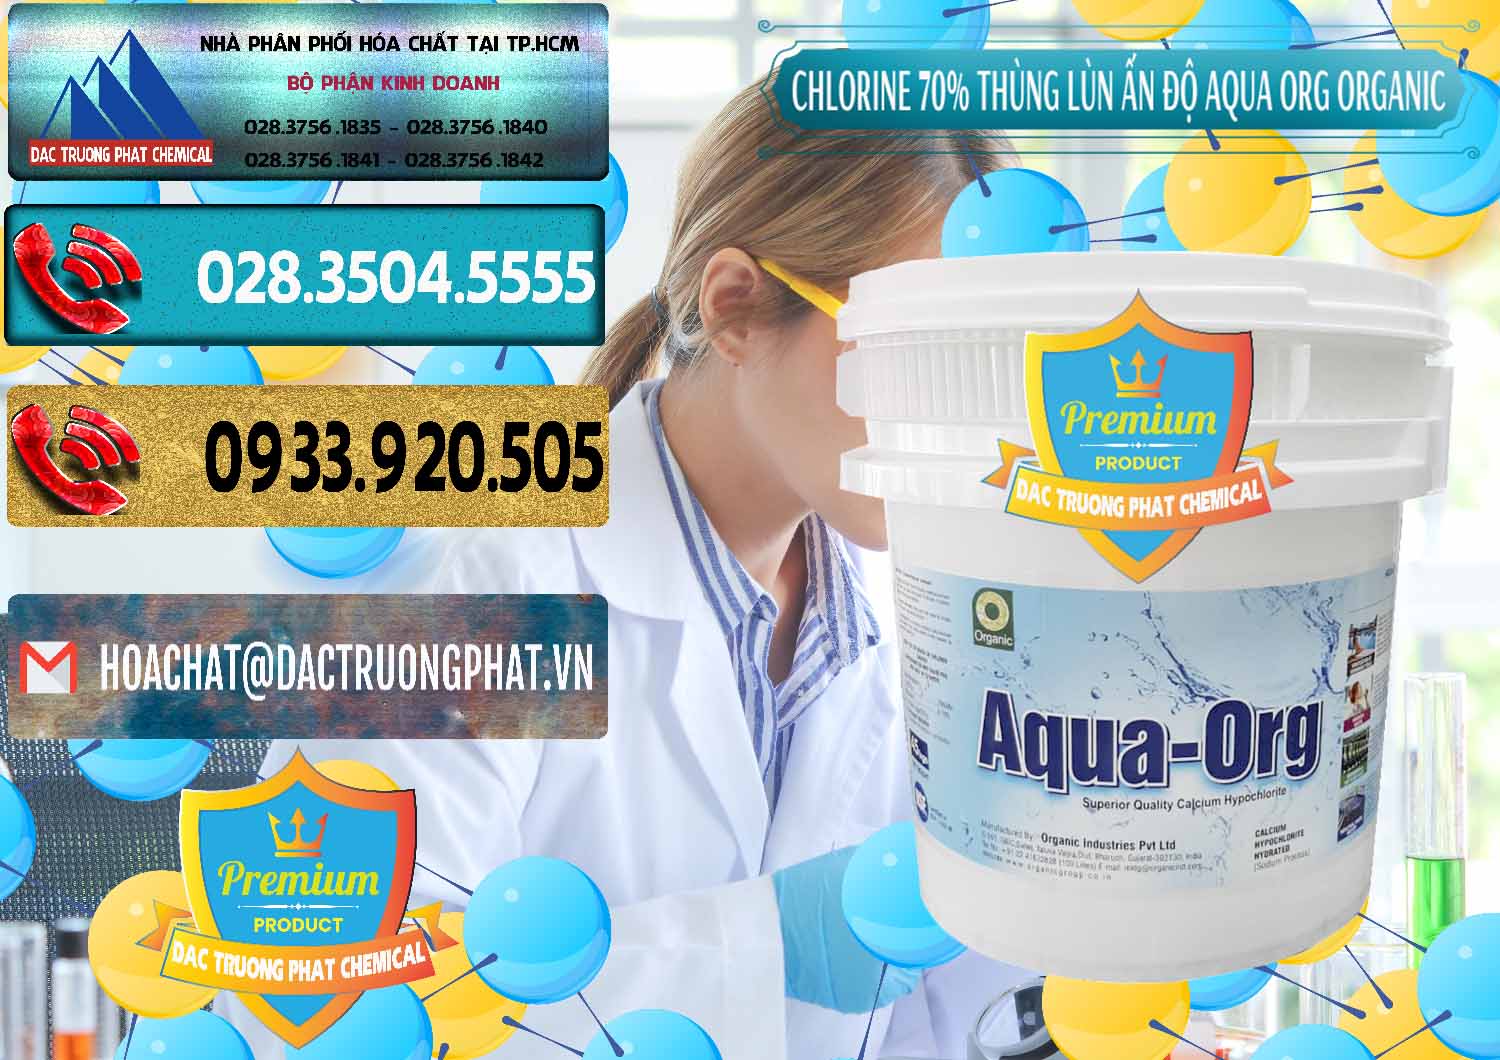 Cty chuyên phân phối và bán Chlorine – Clorin 70% Thùng Lùn Ấn Độ Aqua ORG Organic India - 0212 - Nơi cung ứng _ phân phối hóa chất tại TP.HCM - hoachatdetnhuom.com